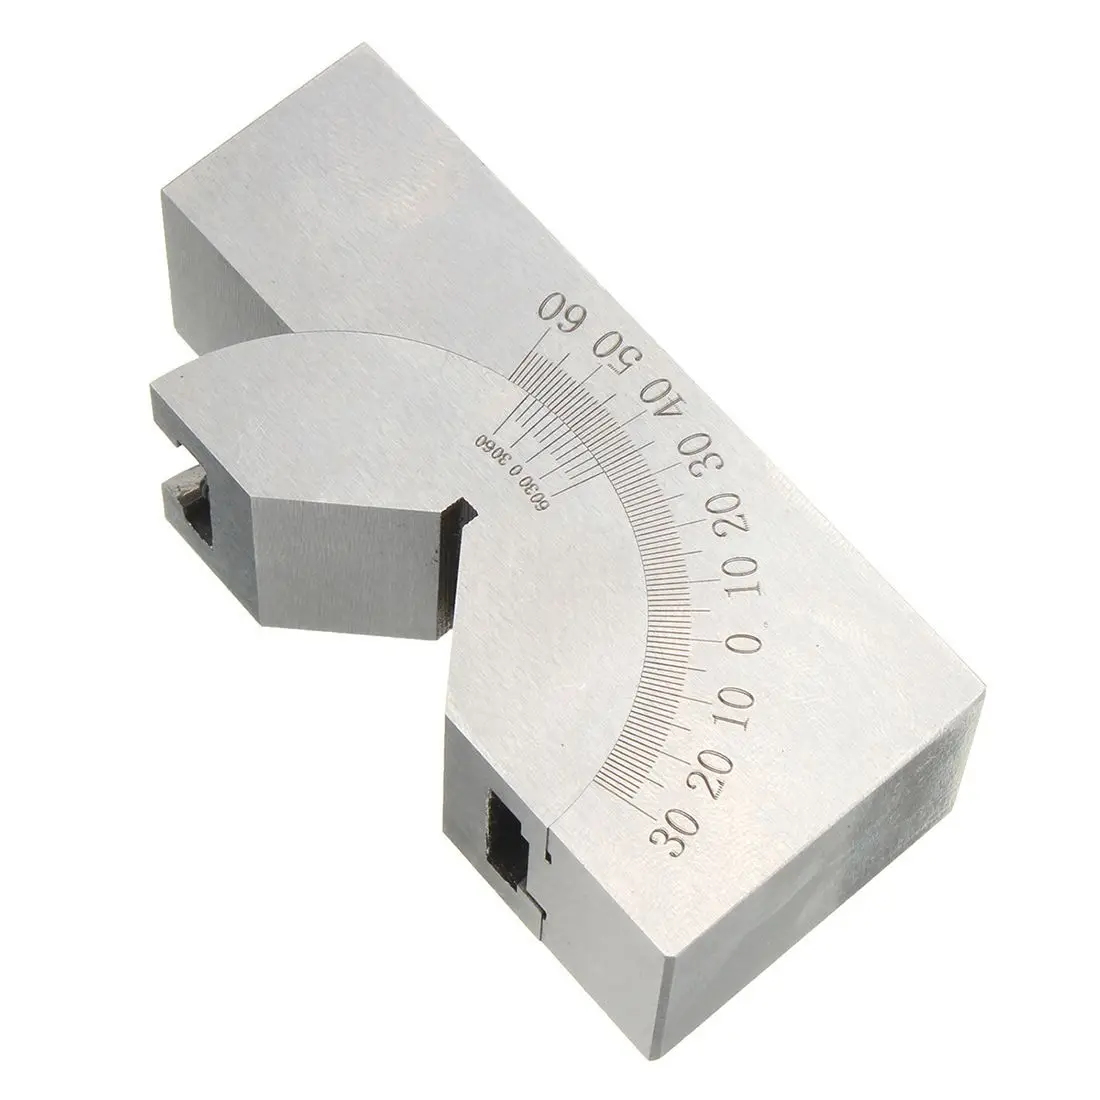 75x25x32 мм Точность мини Регулируемый угол V блок фрезерование 0 градусов до 60 градусов